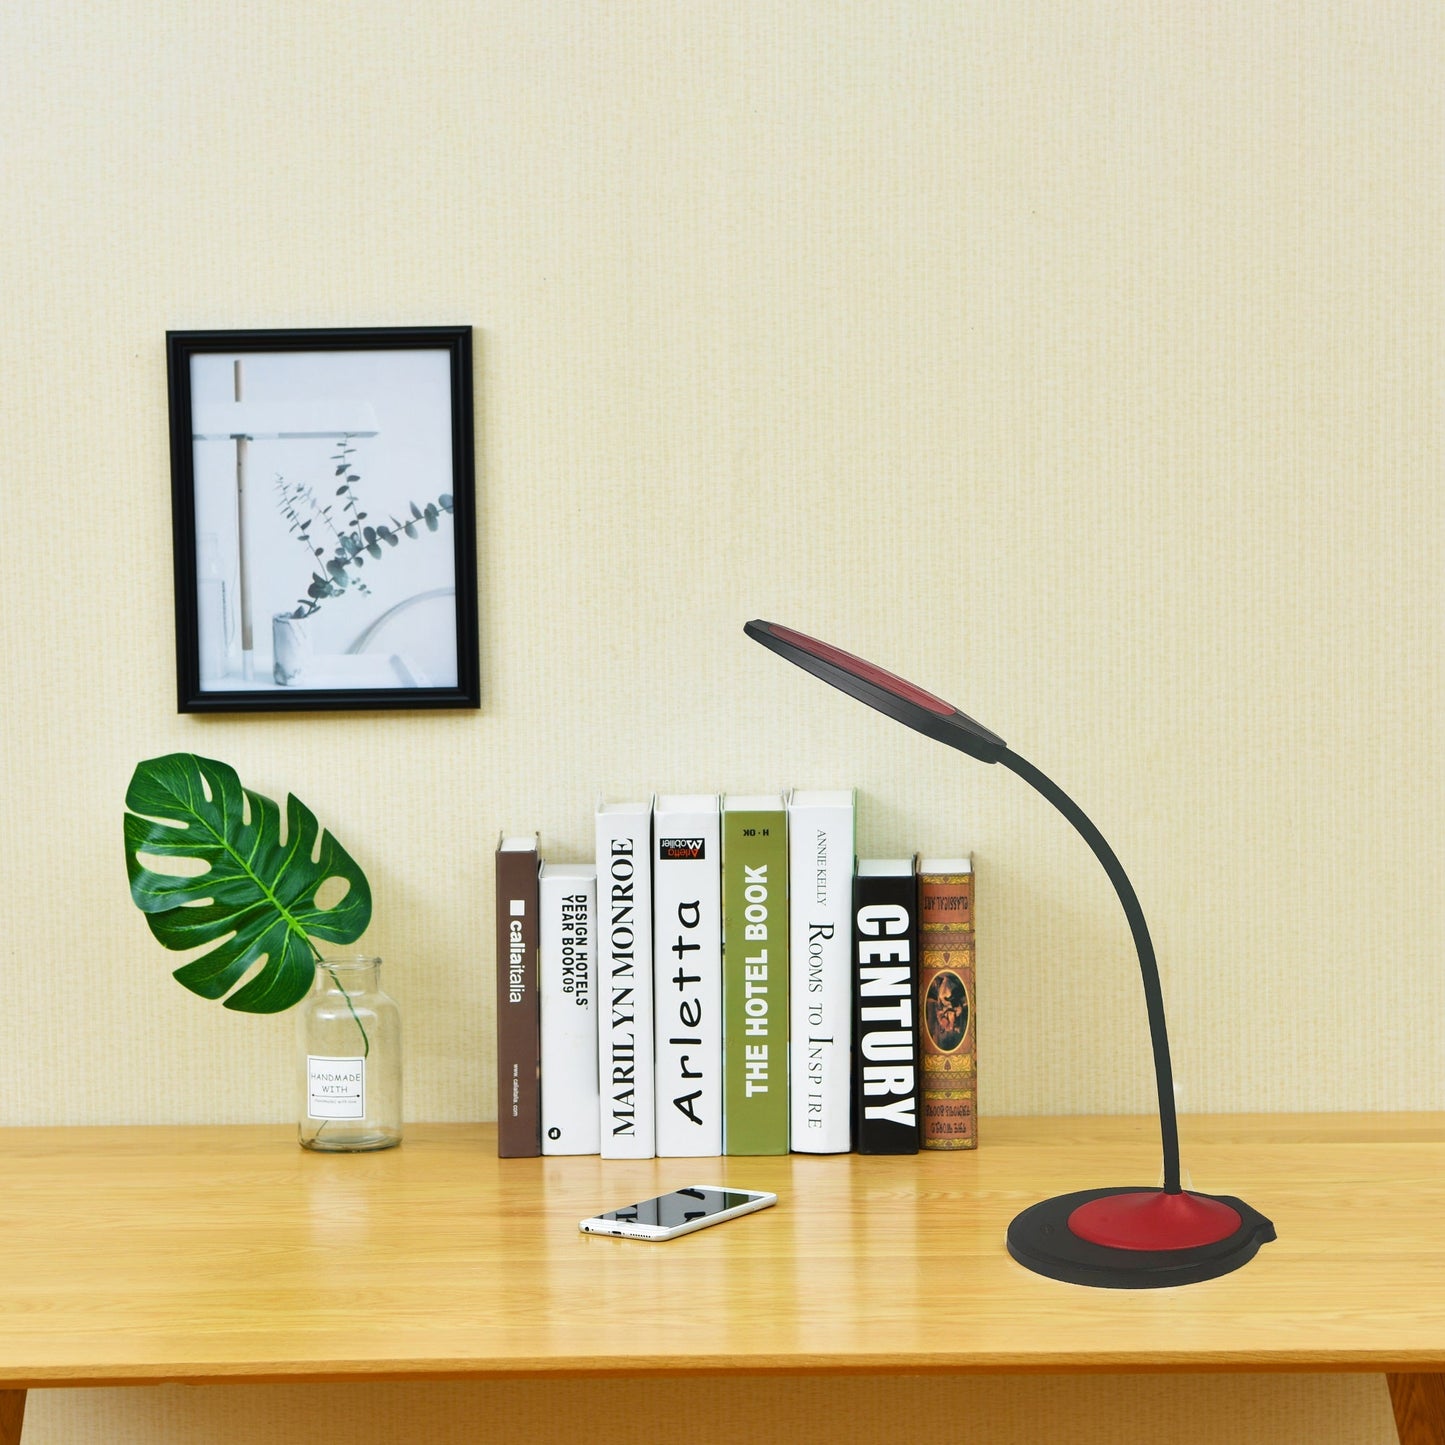 Lampe de bureau/lampe de table LED réglable DAC® MP-350 avec port de chargement USB, rouge et noir